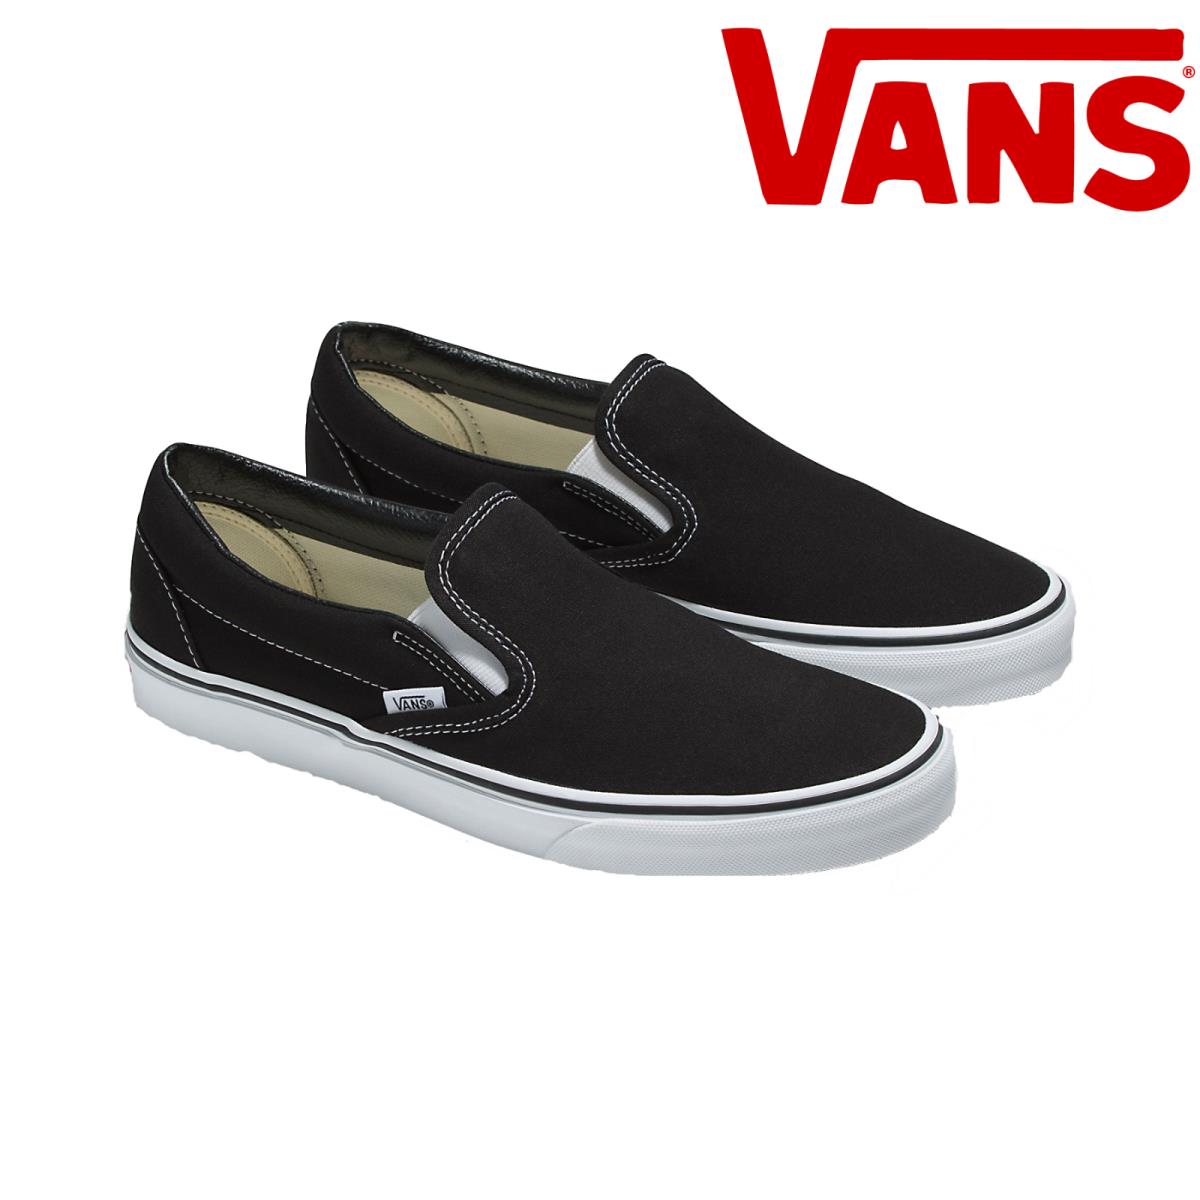 Vans Classic Slip-on Shoe Black/white